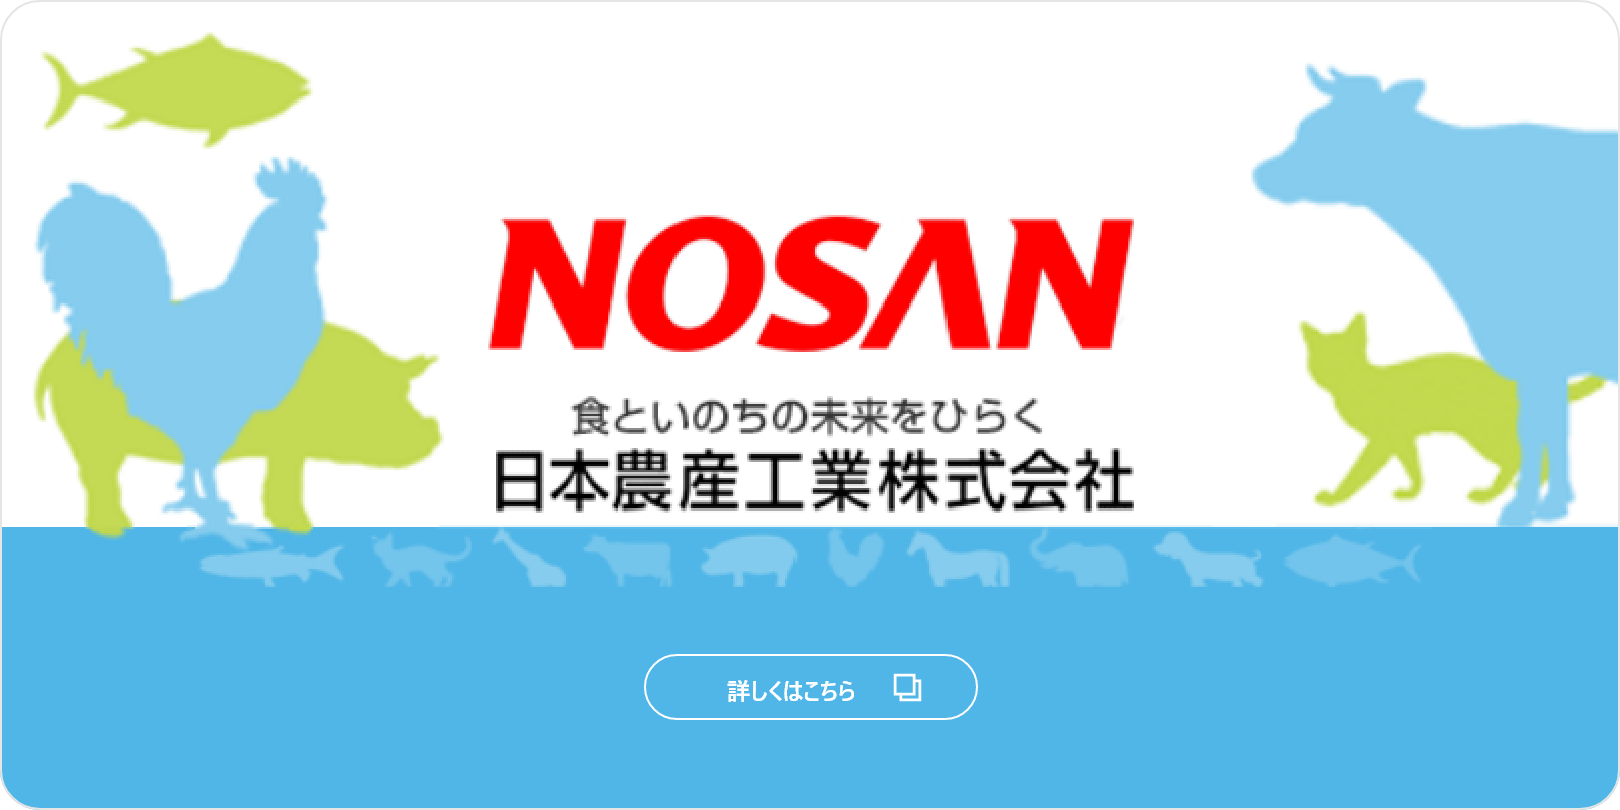 NOSAN日本農産工業株式会社 企業情報